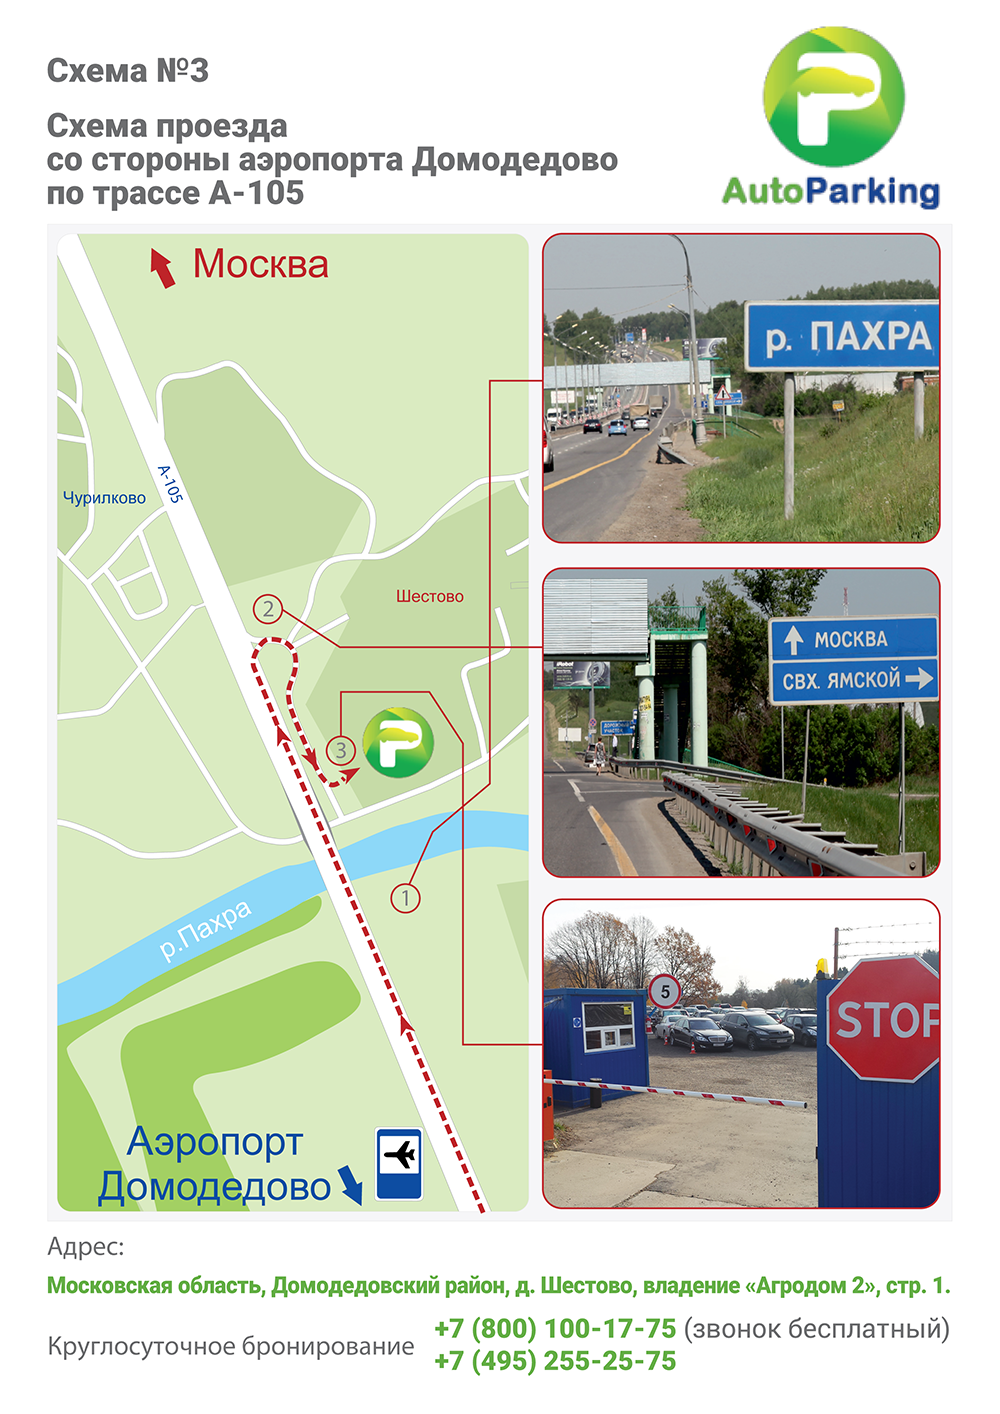 Схема проезда со стороны аэропорта Домодедово по трассе А-105